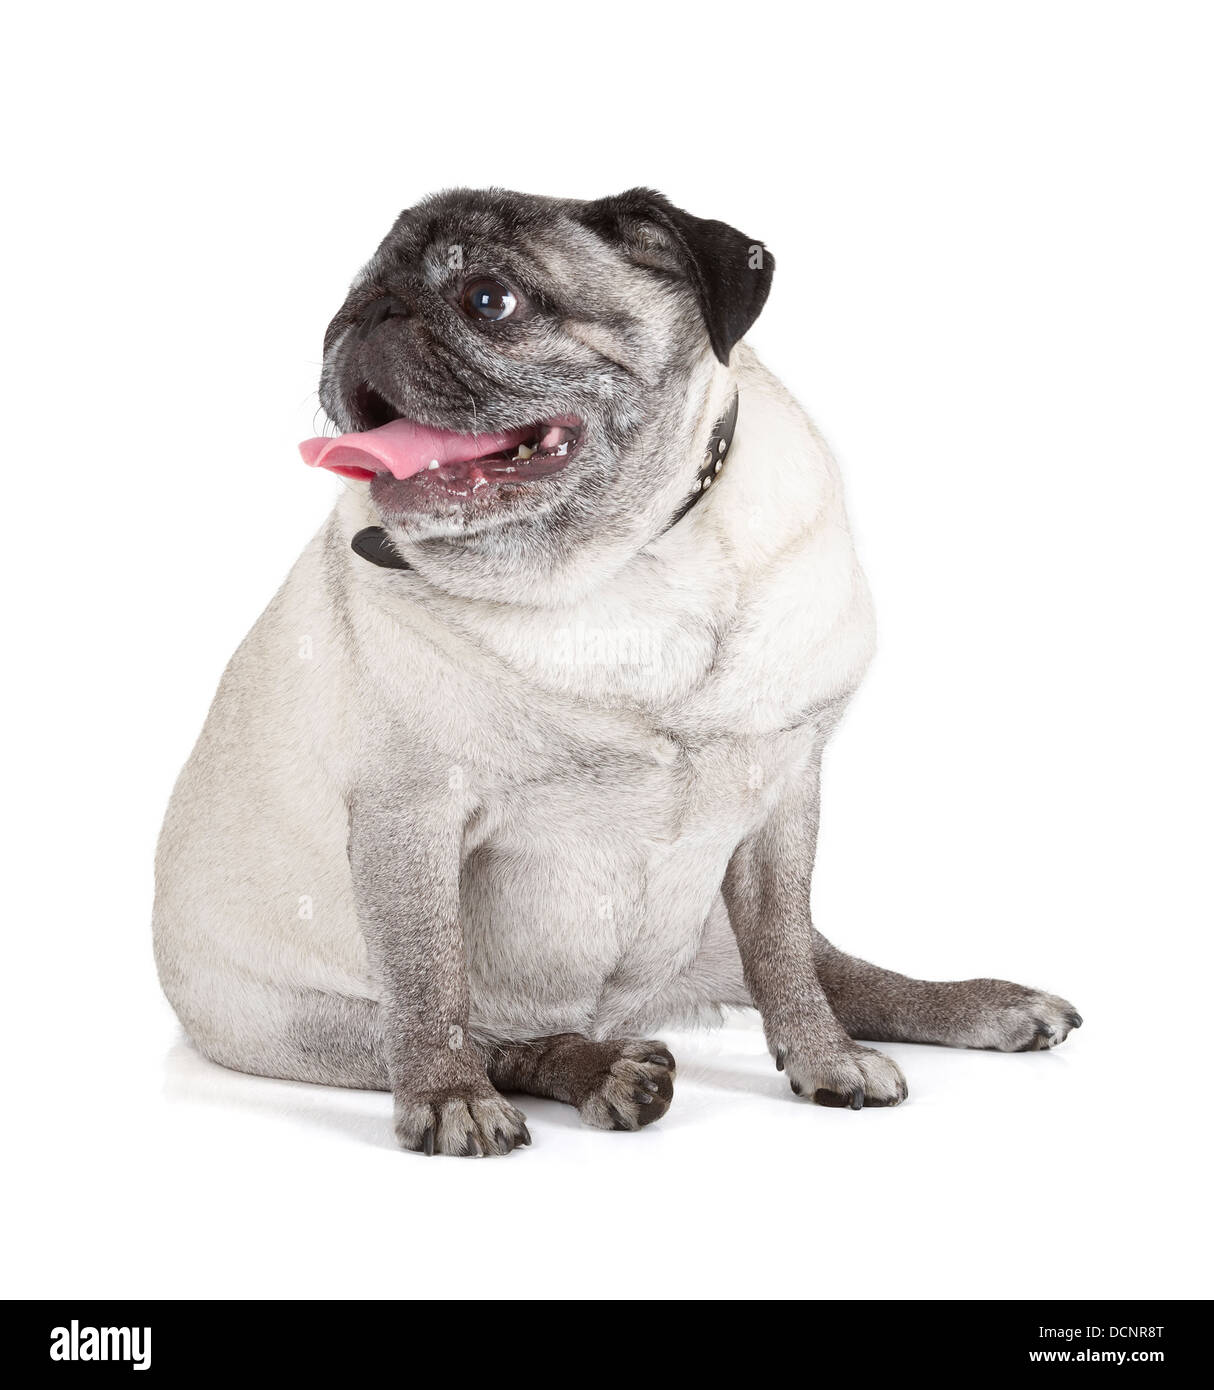 Pug dog isolated on white background Stock Photo